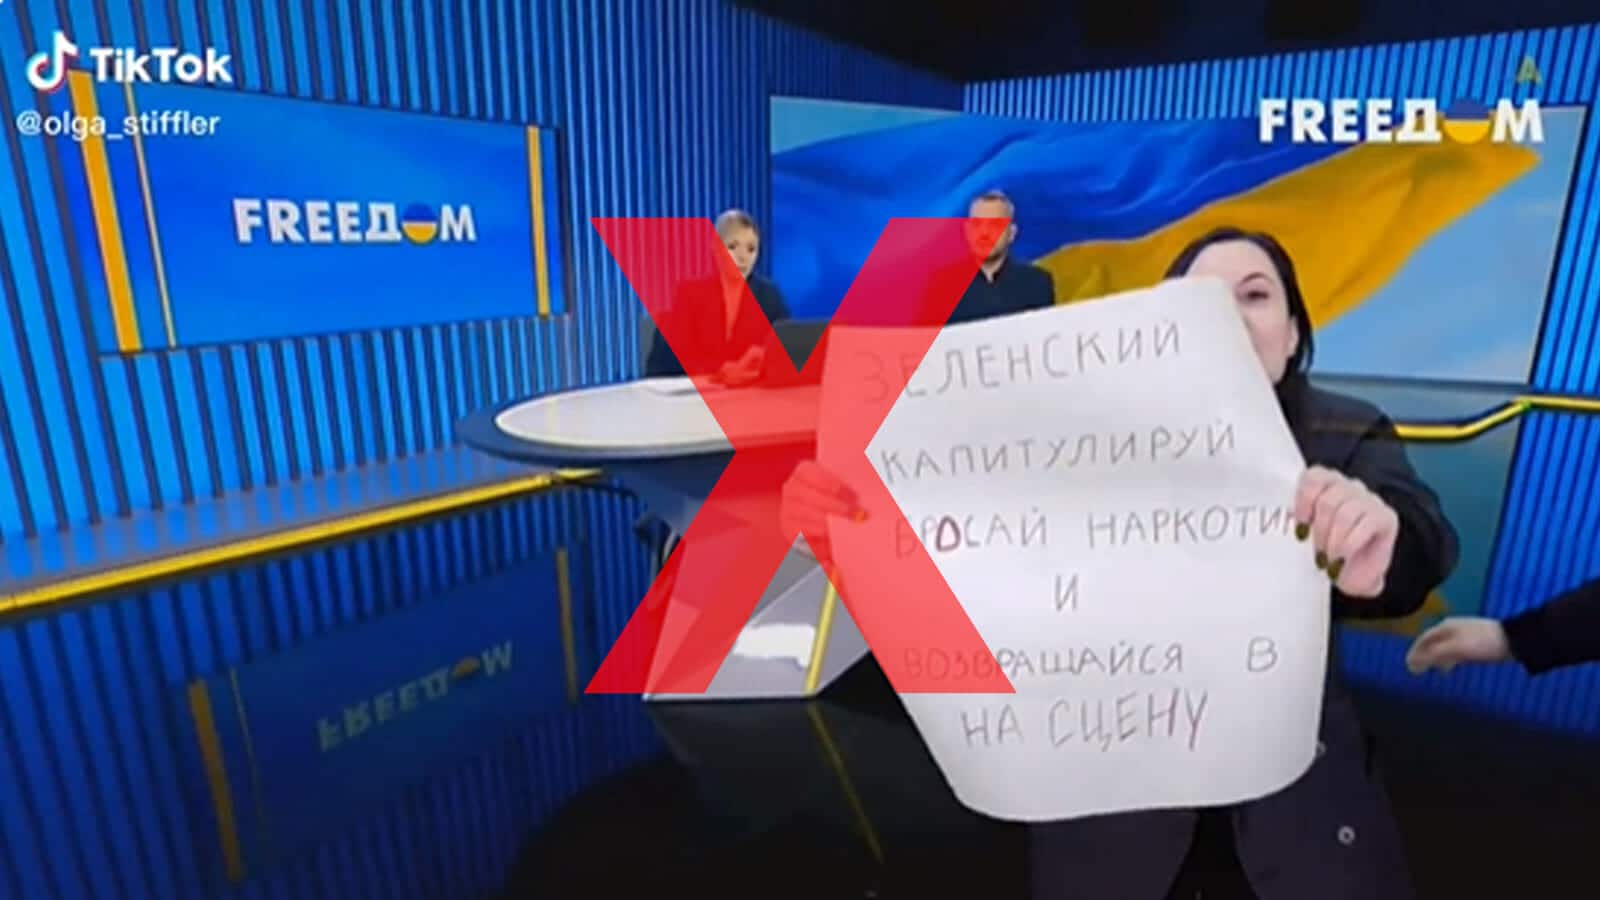 Manipuliertes Video: Diese Frau hat keine ukrainische Nachrichtensendung unterbrochen / Screenshot TikTok Olga_Stiffler